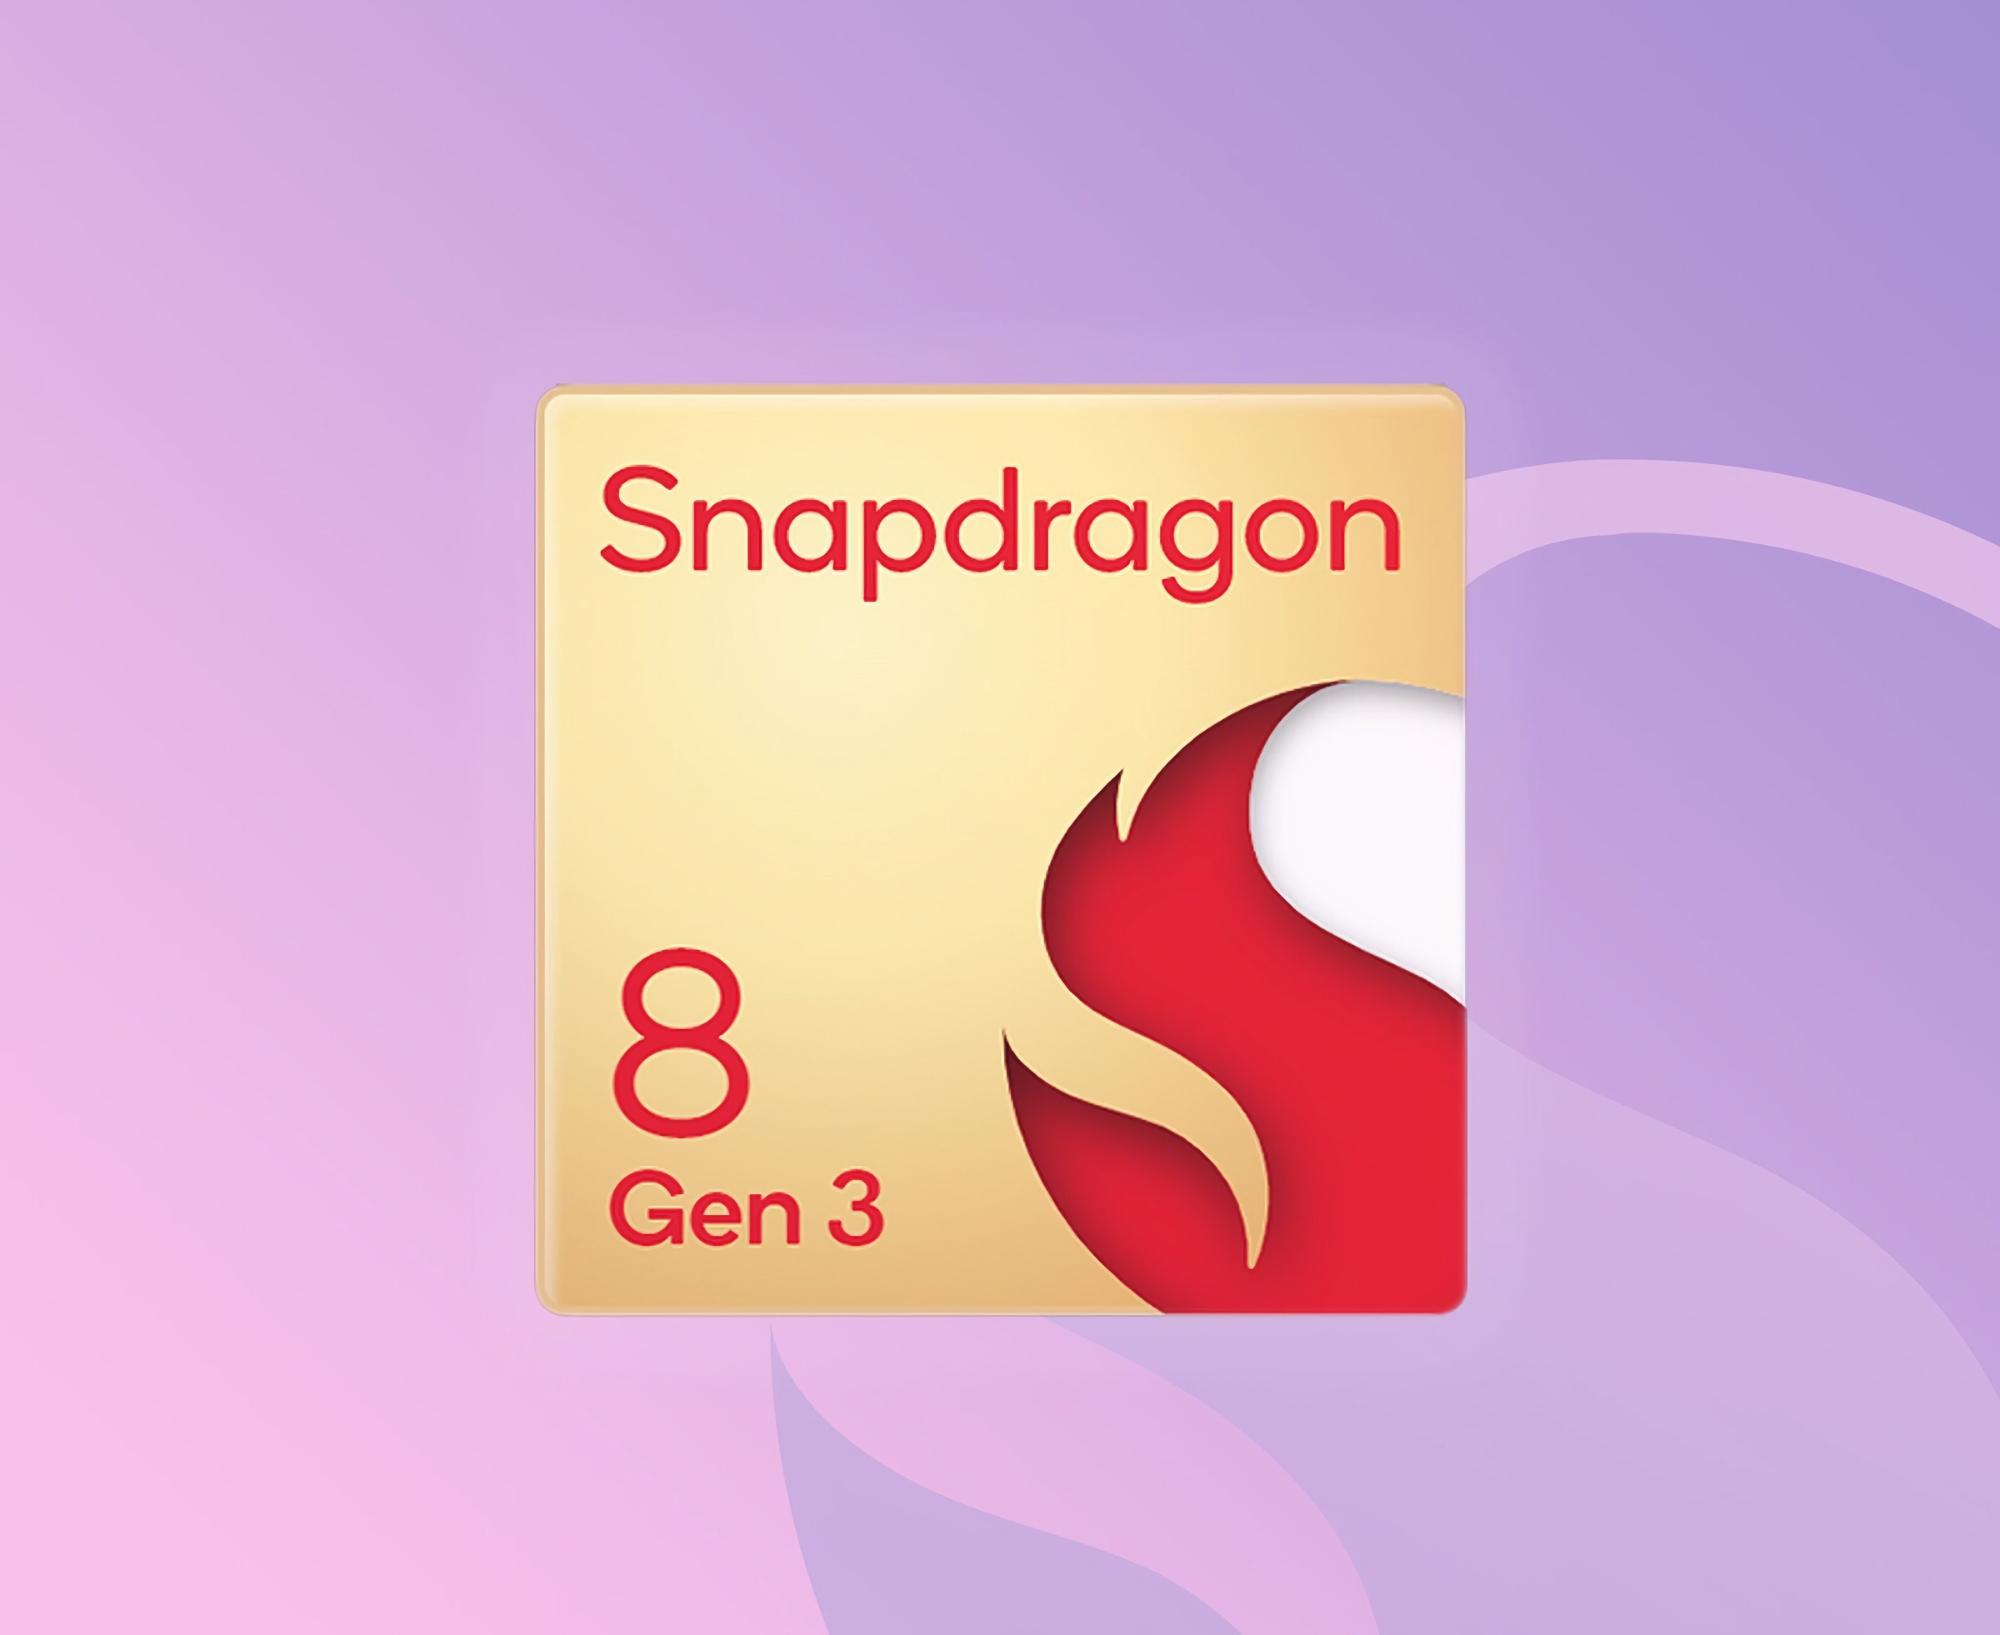 Jetzt ist es offiziell: Qualcomm wird den Snapdragon 8 Gen 3-Chip auf einer Veranstaltung am 25. und 26. Oktober enthüllen